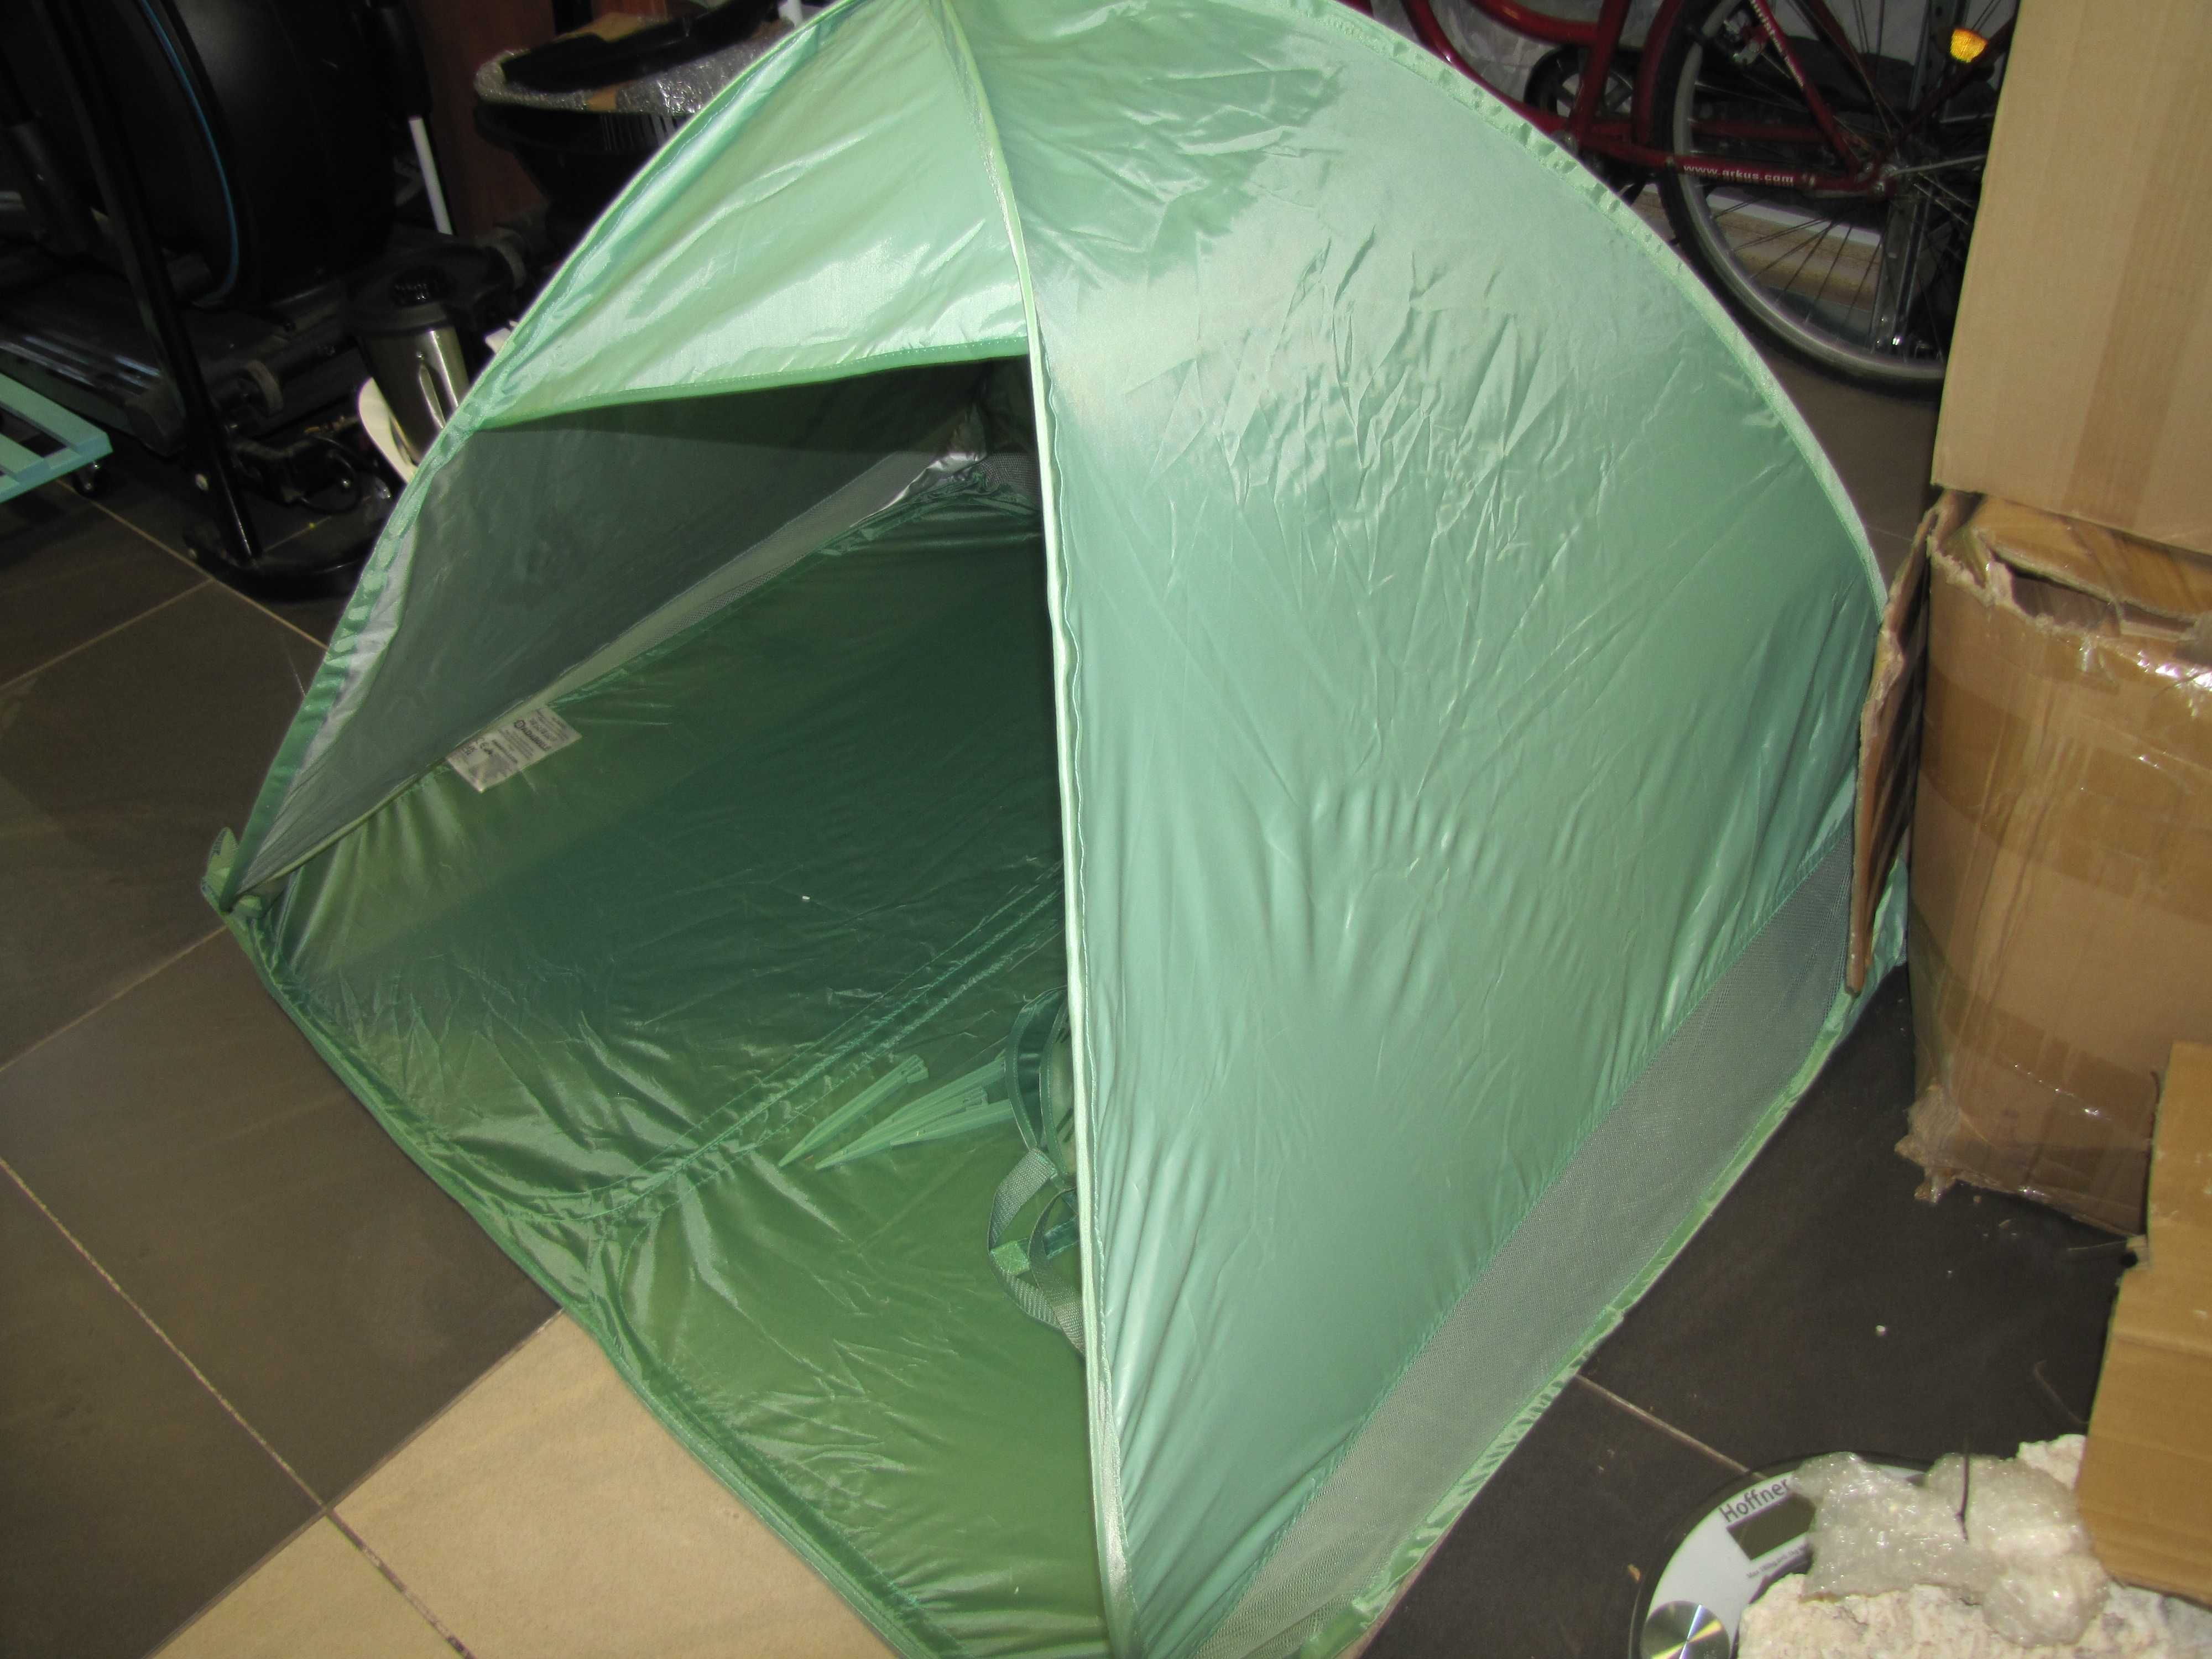 Namiot plażowy z ochroną UV 50+ system pop-up, 125 x 100 Badabulle